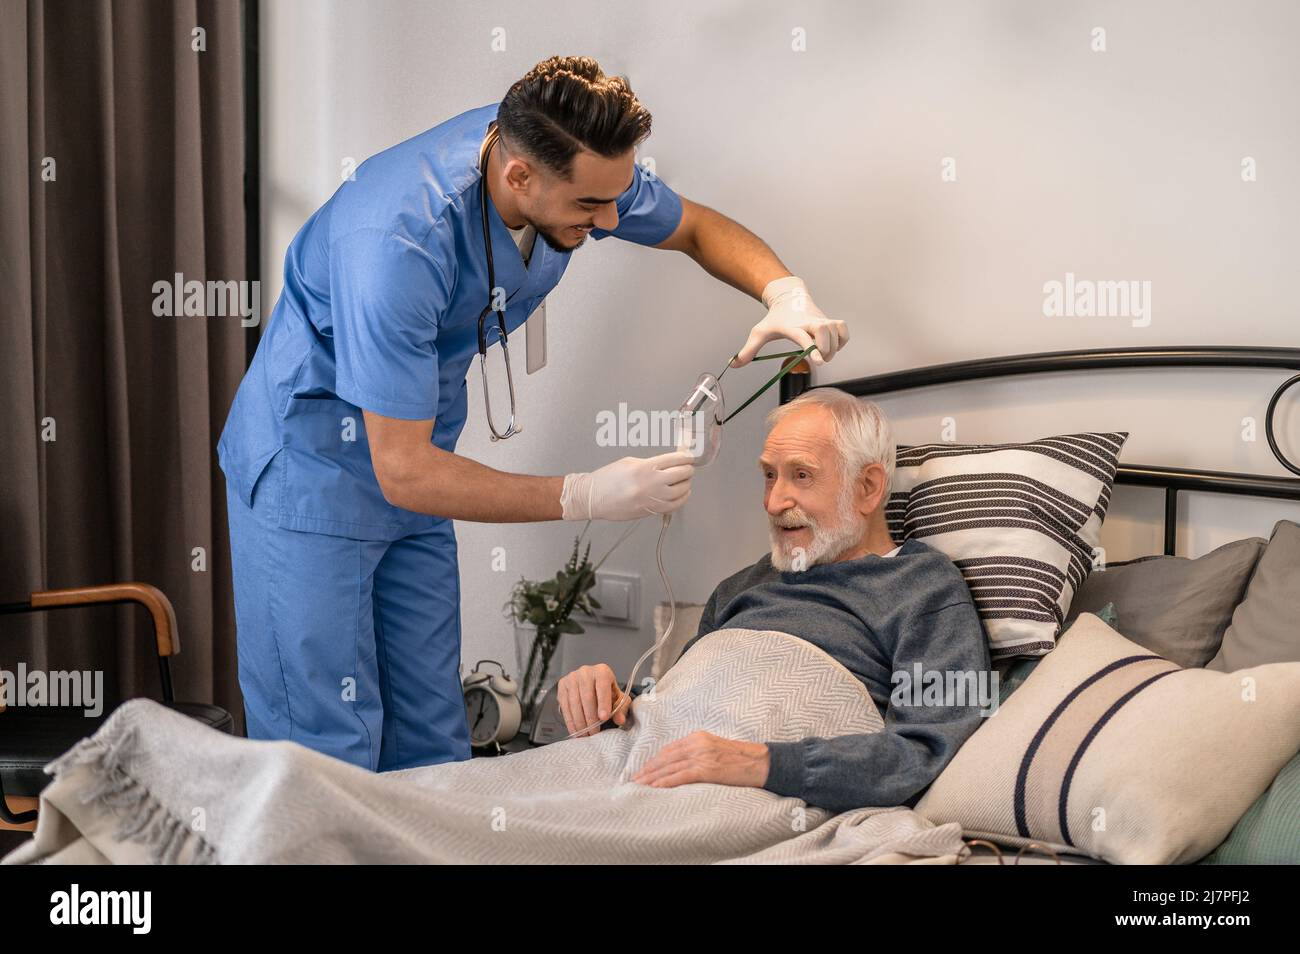 Professionnel de la santé préparant un patient âgé pour une intervention médicale Banque D'Images